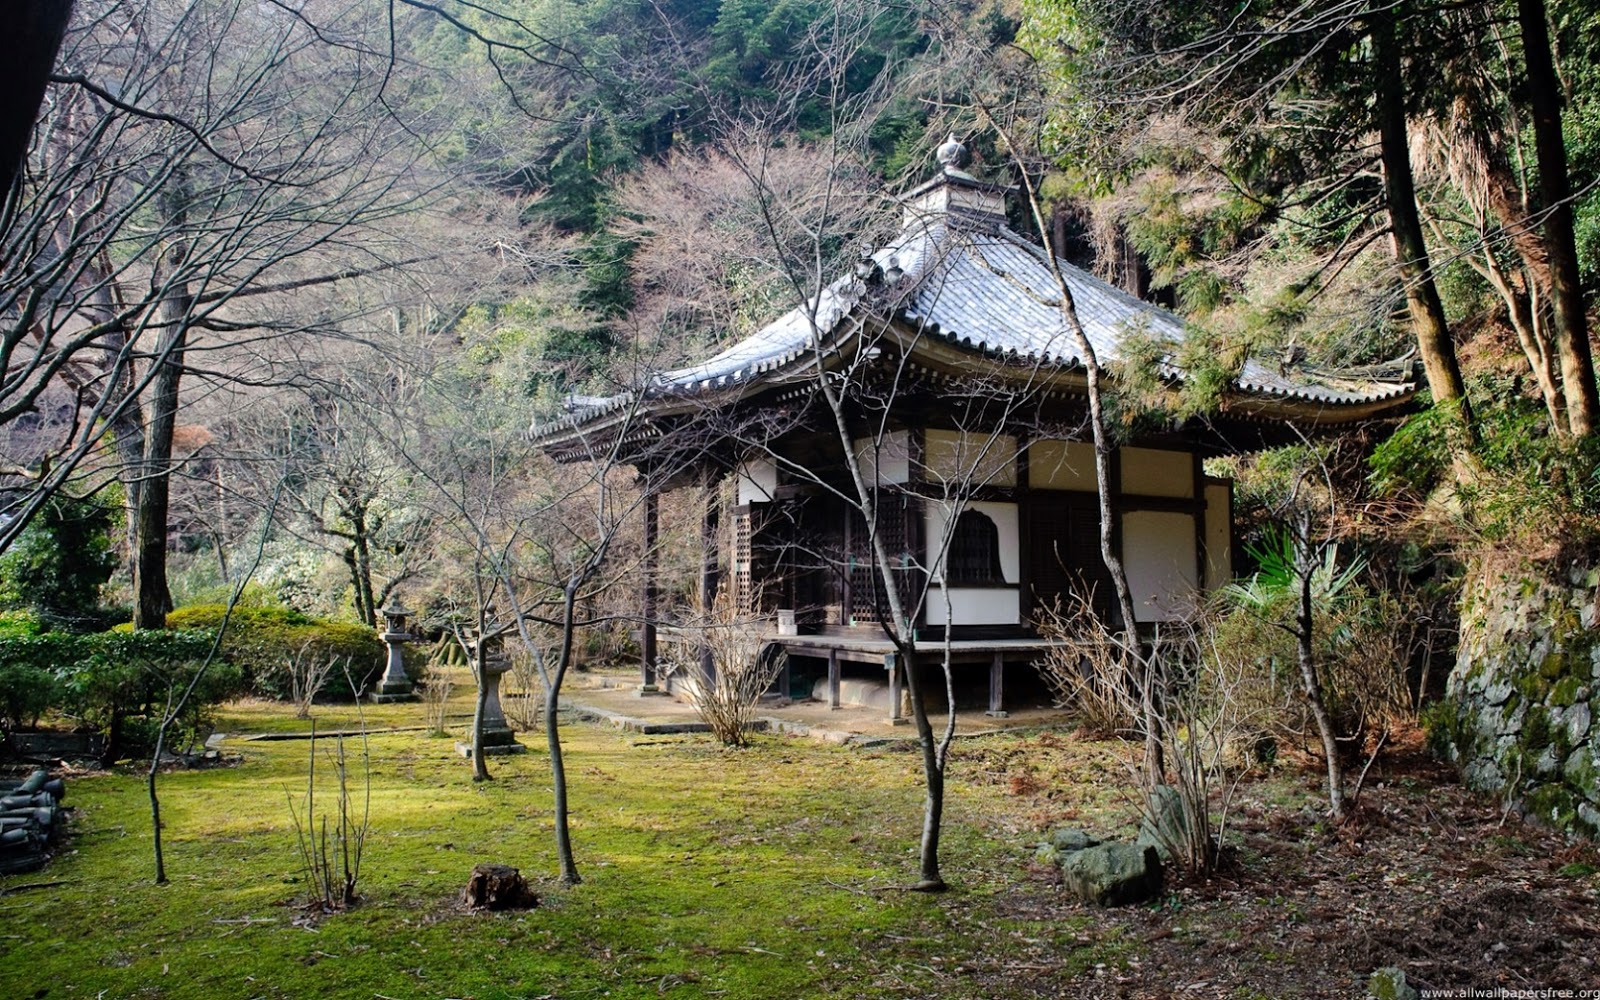 vrai fond d'écran nature,la nature,paysage naturel,architecture,arbre,architecture japonaise